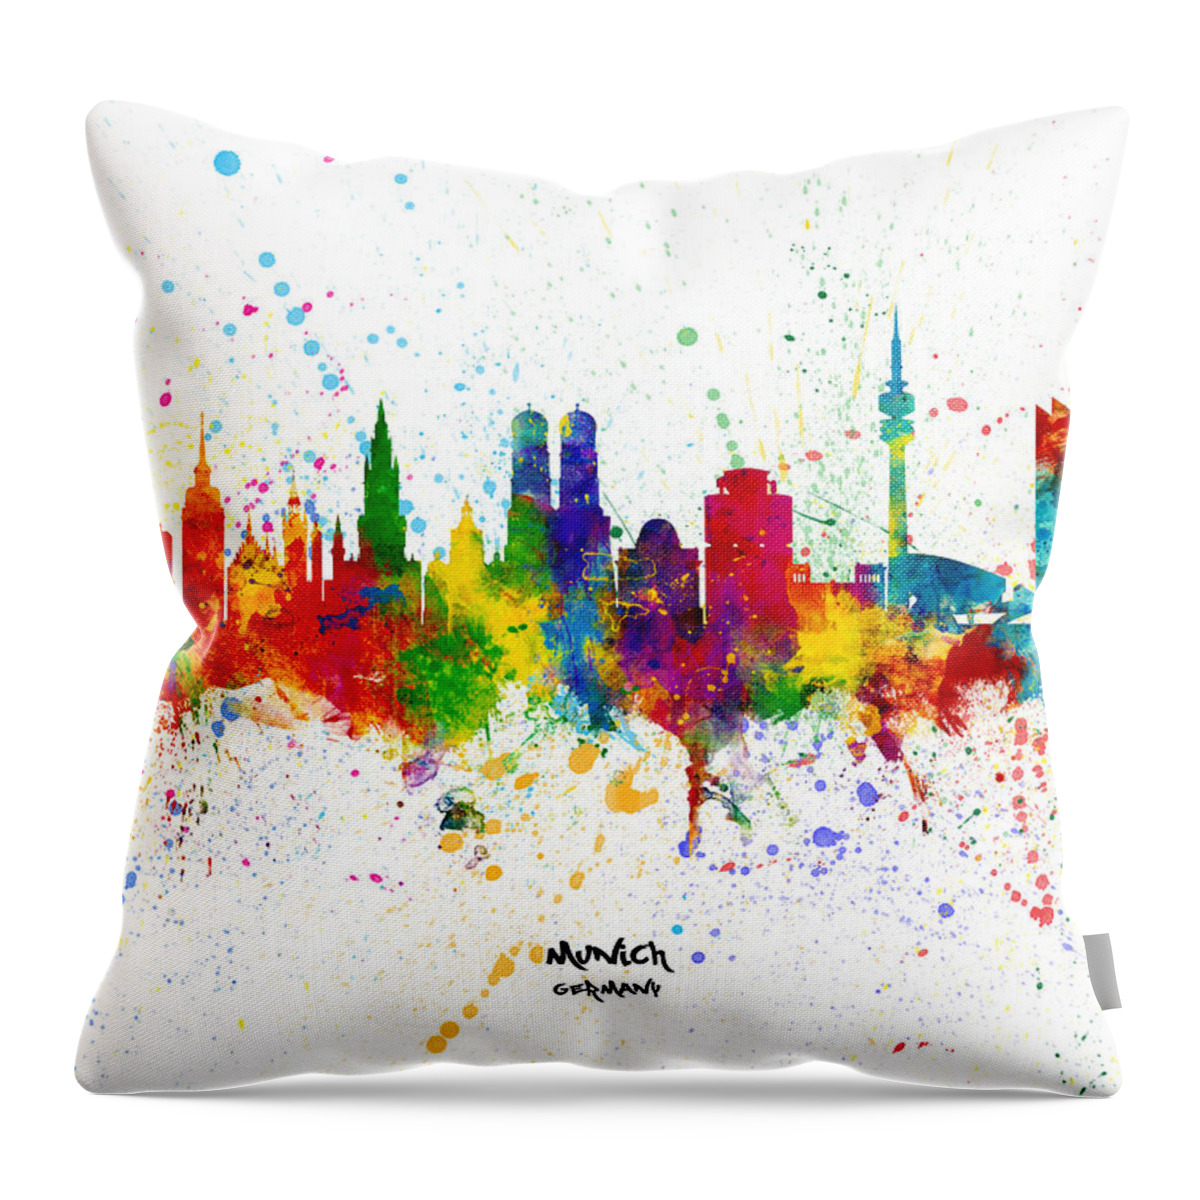 Munich Throw Pillow featuring the digital art Munich Germany Skyline #16 by Michael Tompsett